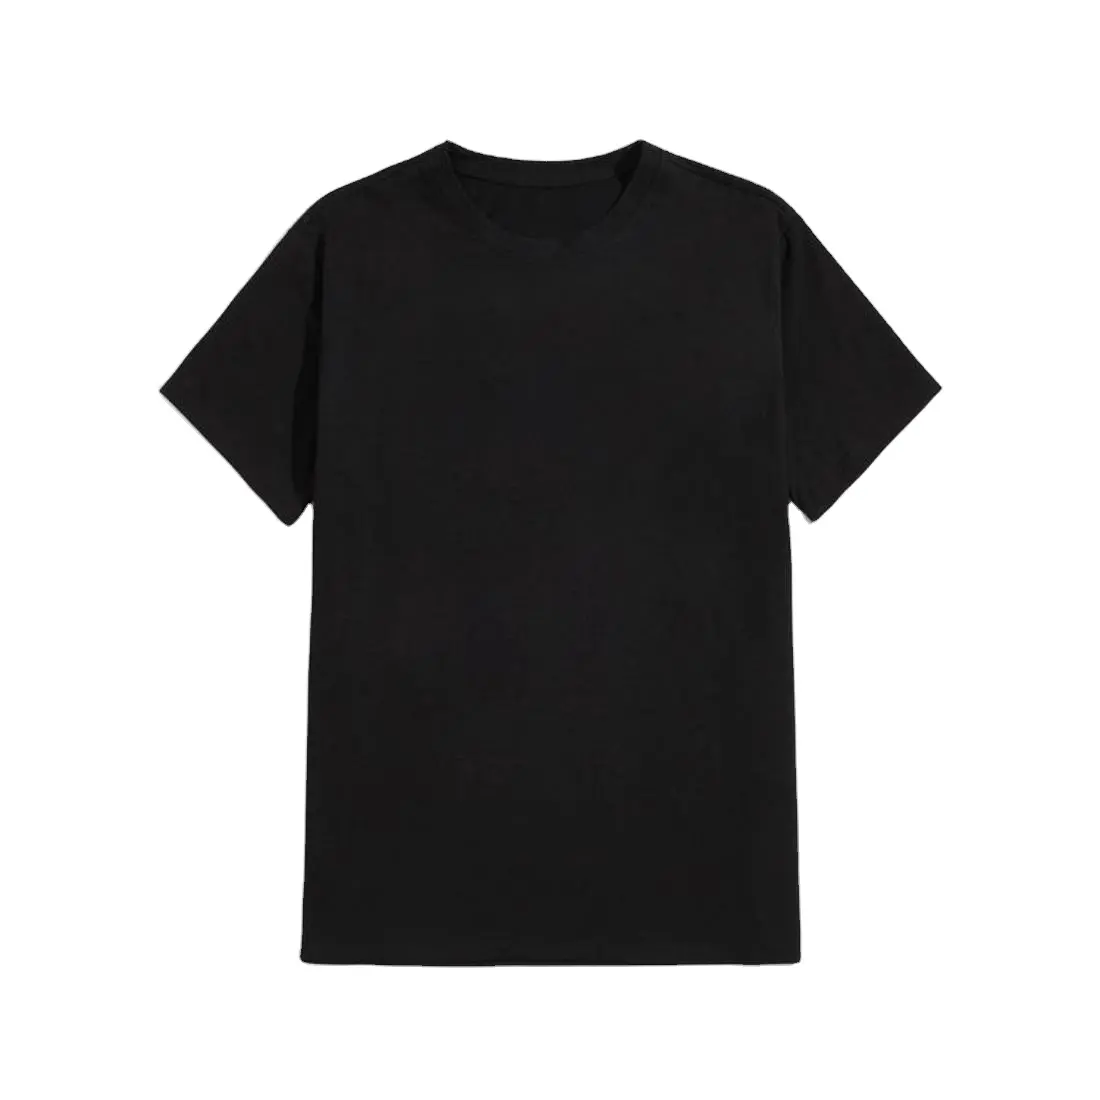 Самая продаваемая черная футболка, рекламная Мужская популярная однотонная черная футболка из 100% хлопка